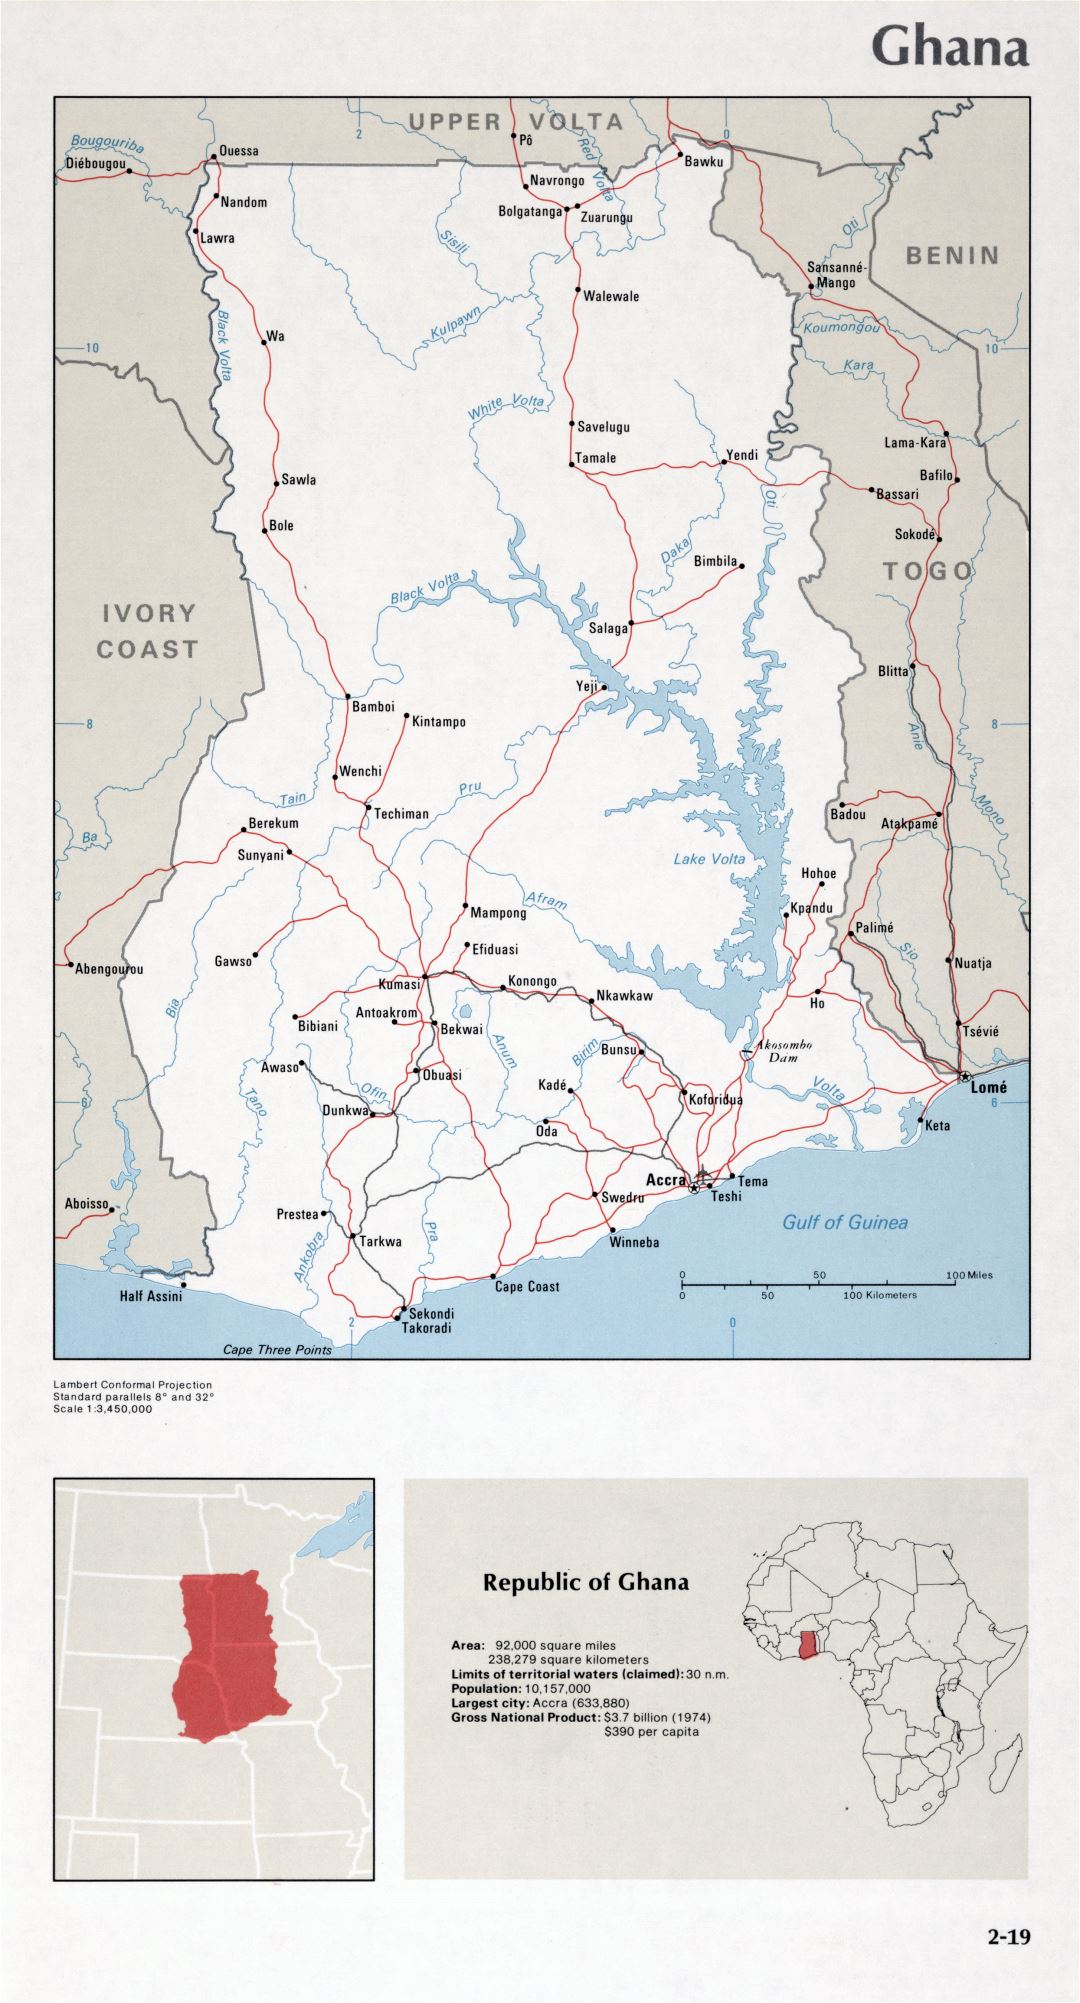 Map of Ghana (2-19)